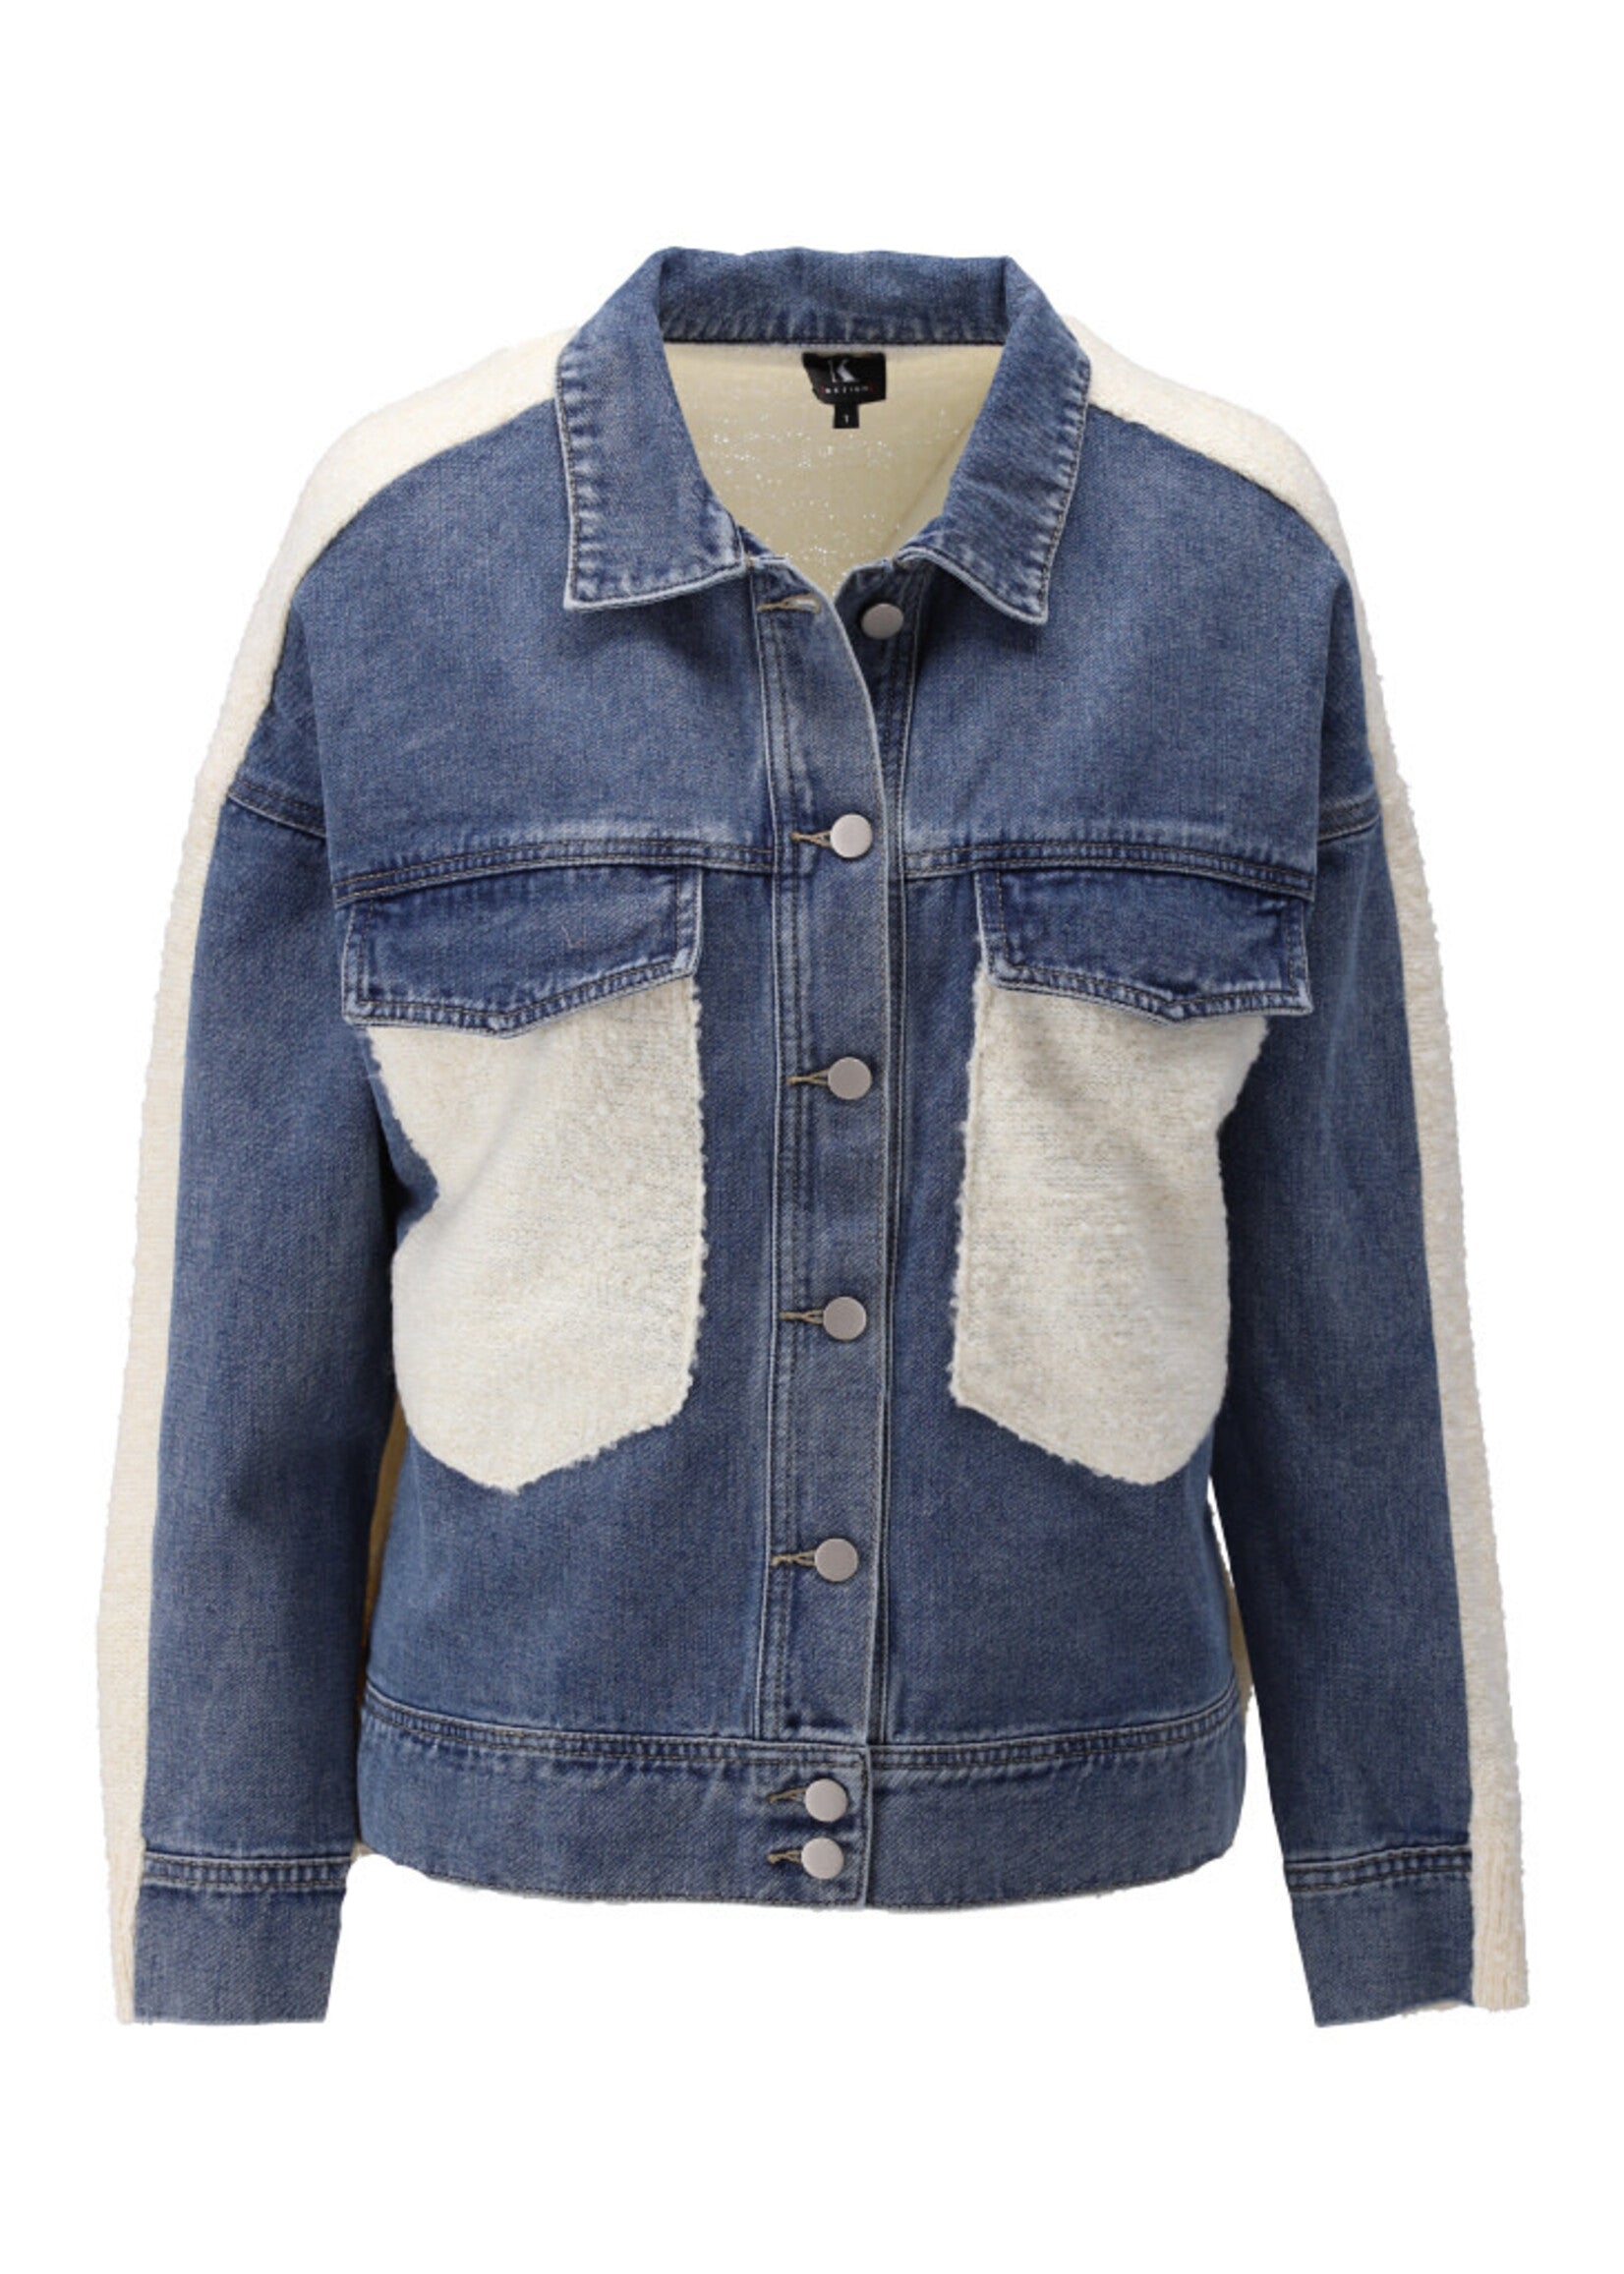 Blue denim jacket, cream knit back and pockets, by K-Design. 